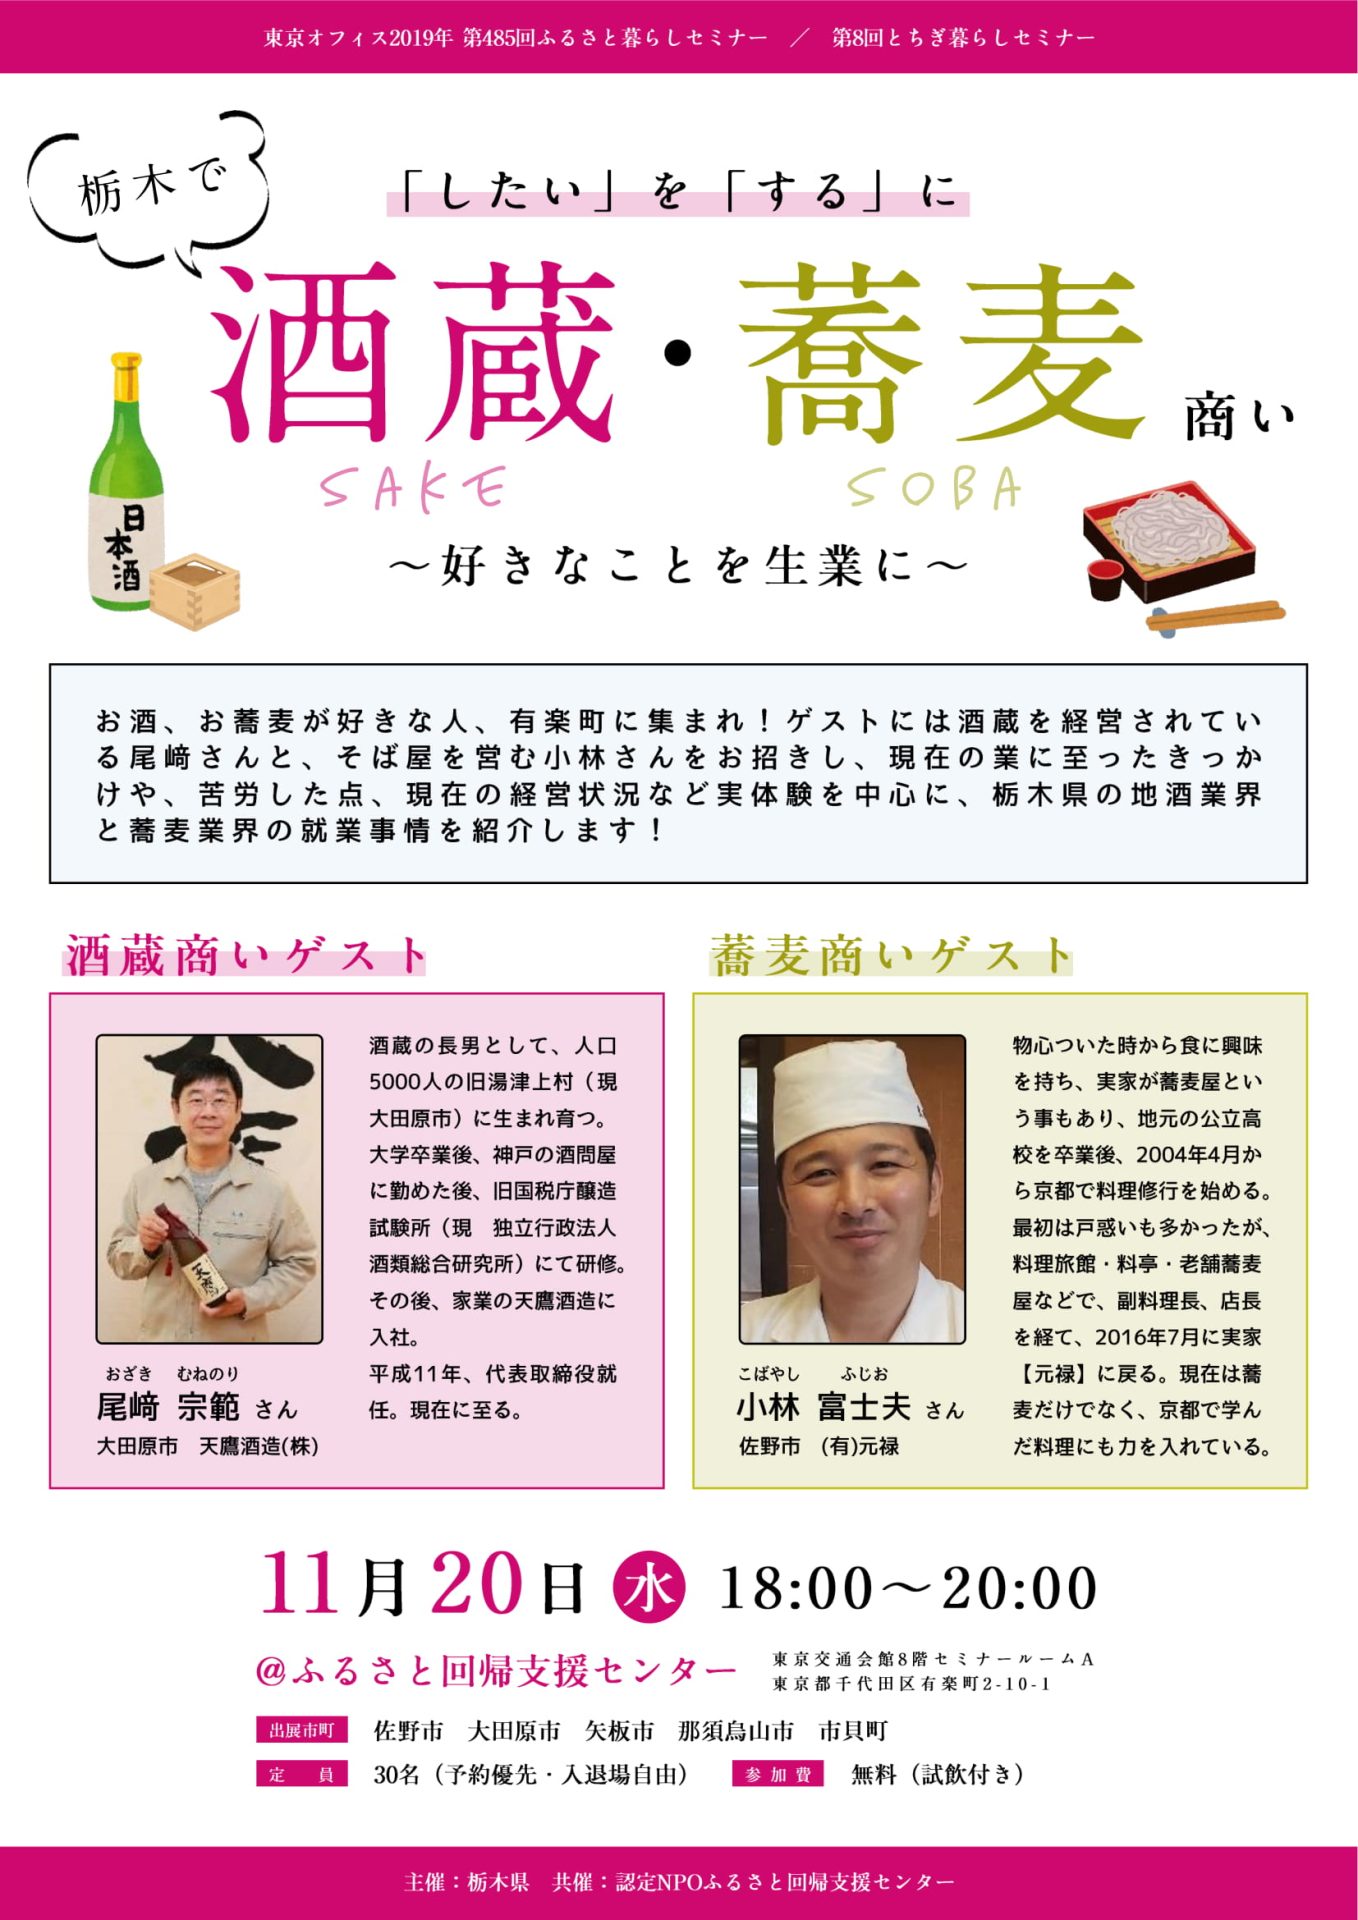 「したい」を「する」に 栃木で酒蔵・蕎麦商い ～好きなことを生業に～ | 移住関連イベント情報